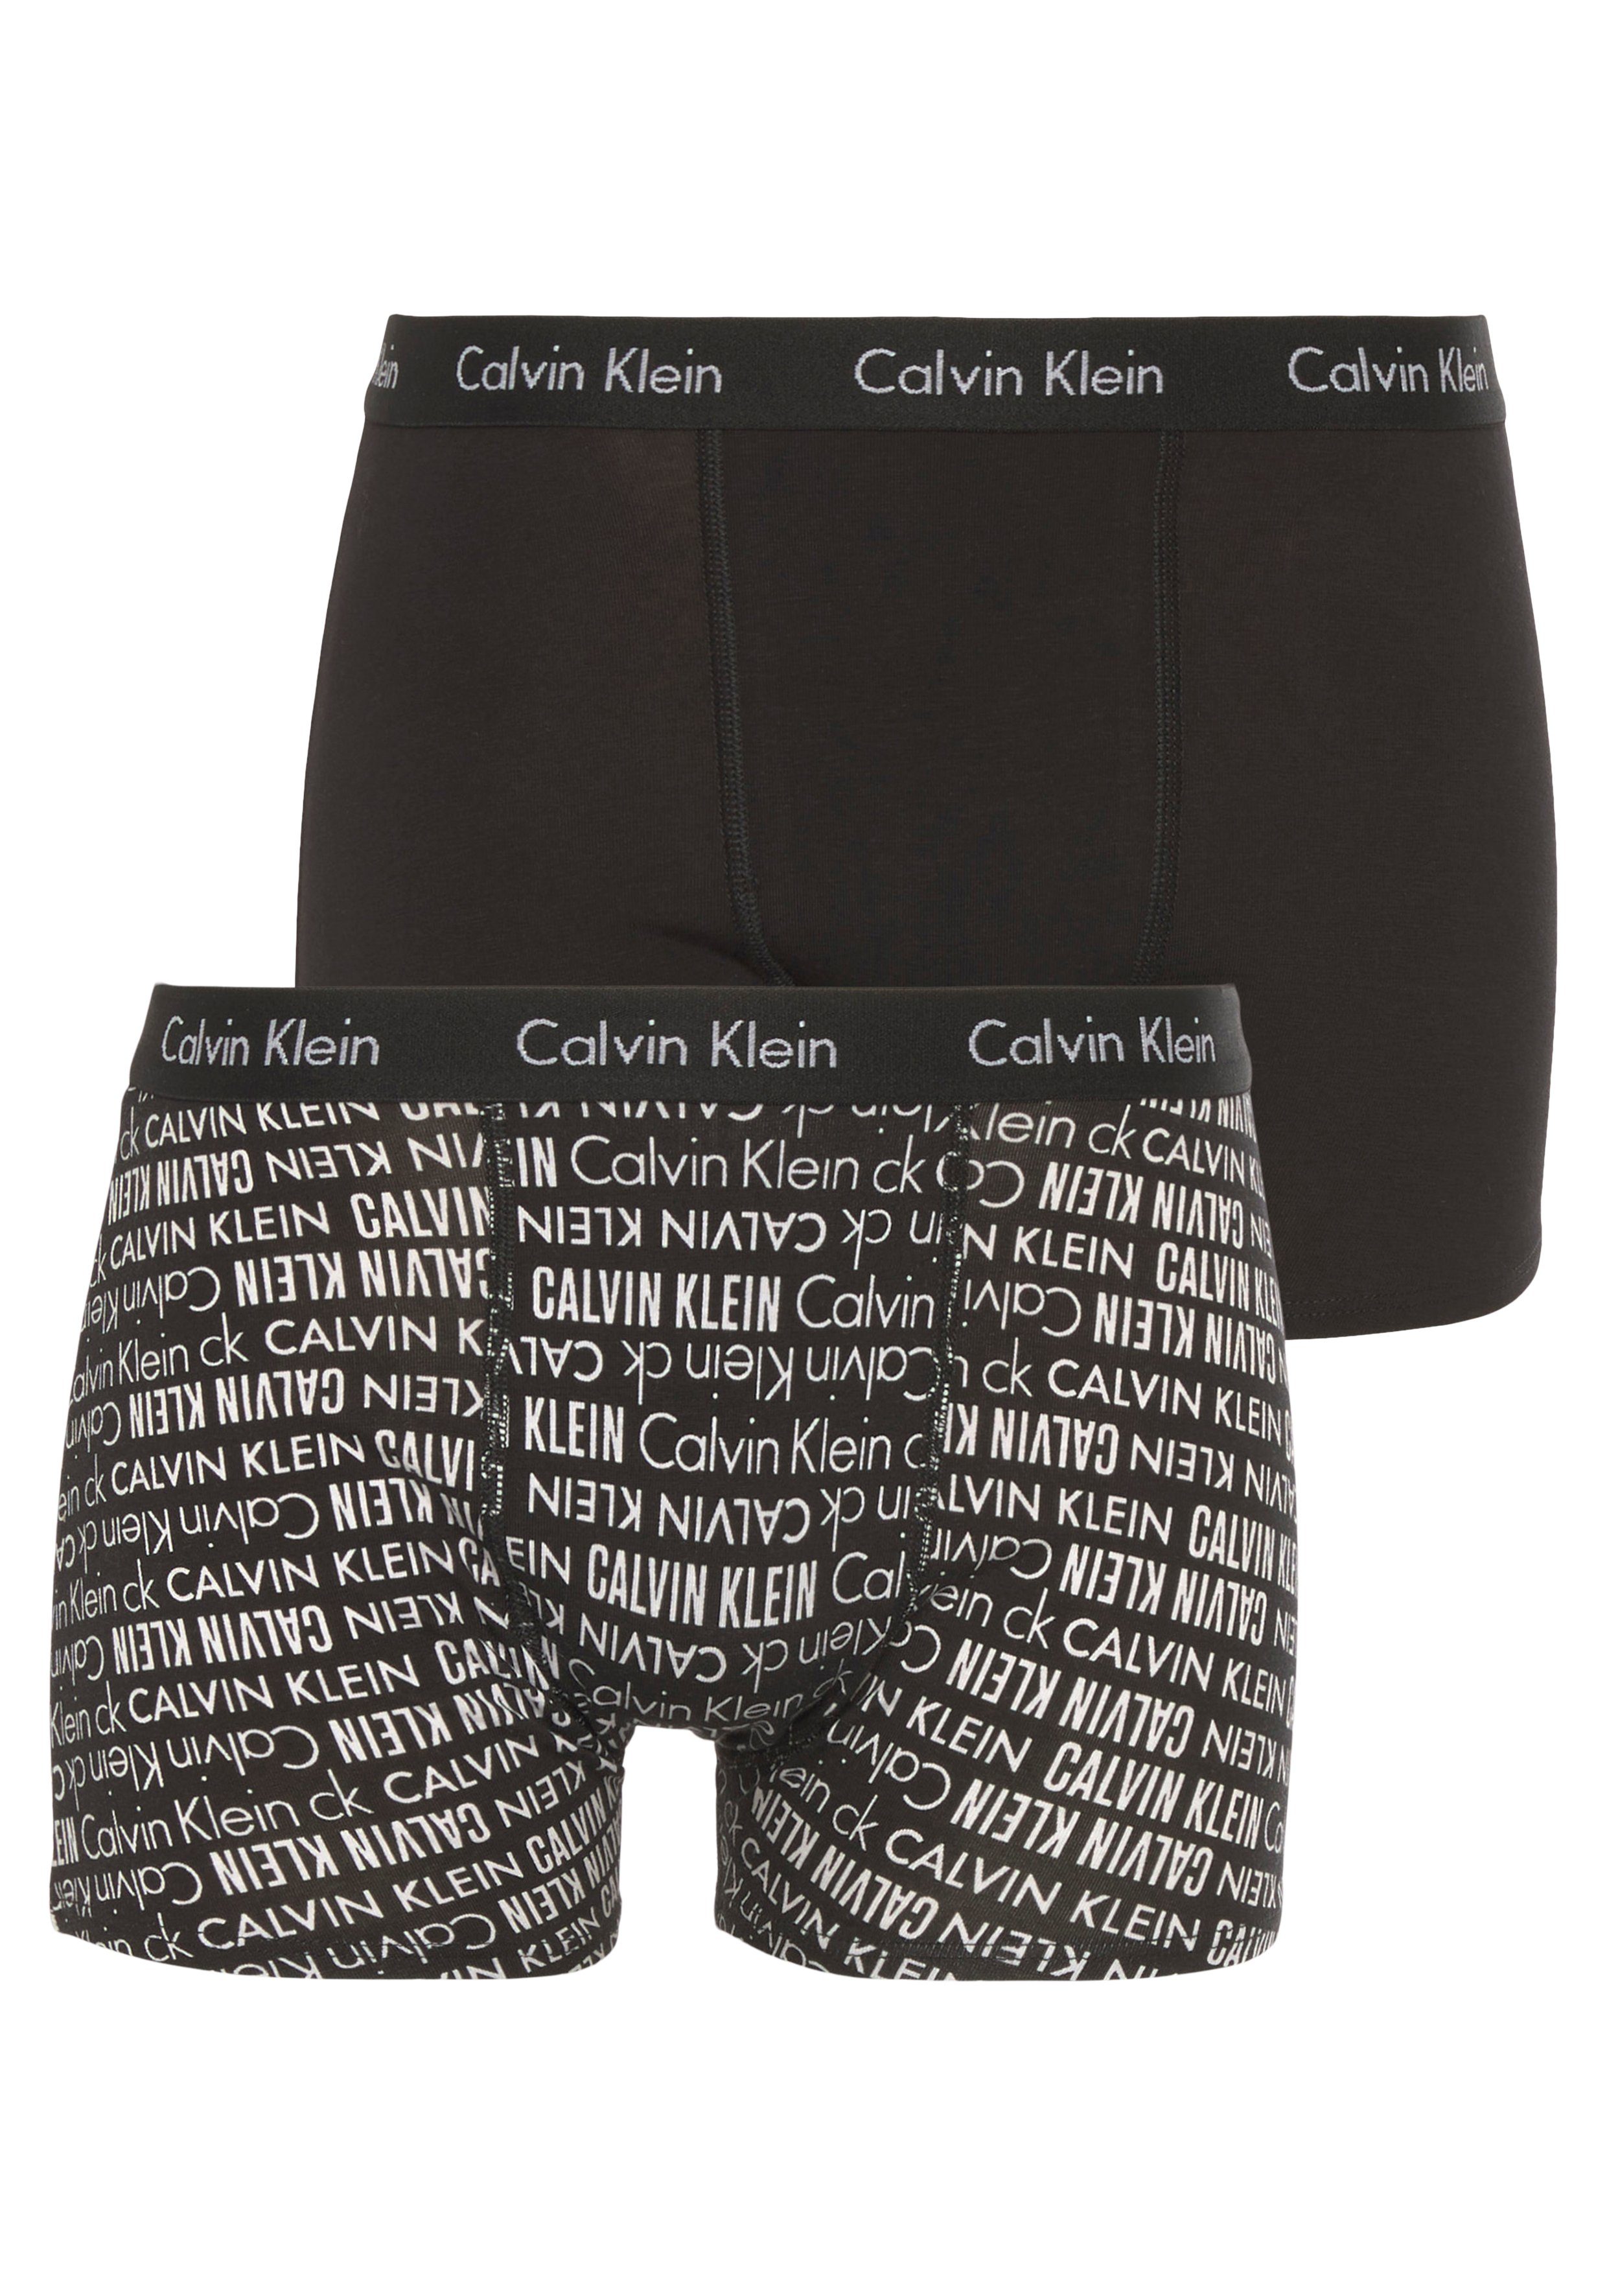 Calvin Klein Jungen Wäsche & online kaufen Bademode | OTTO